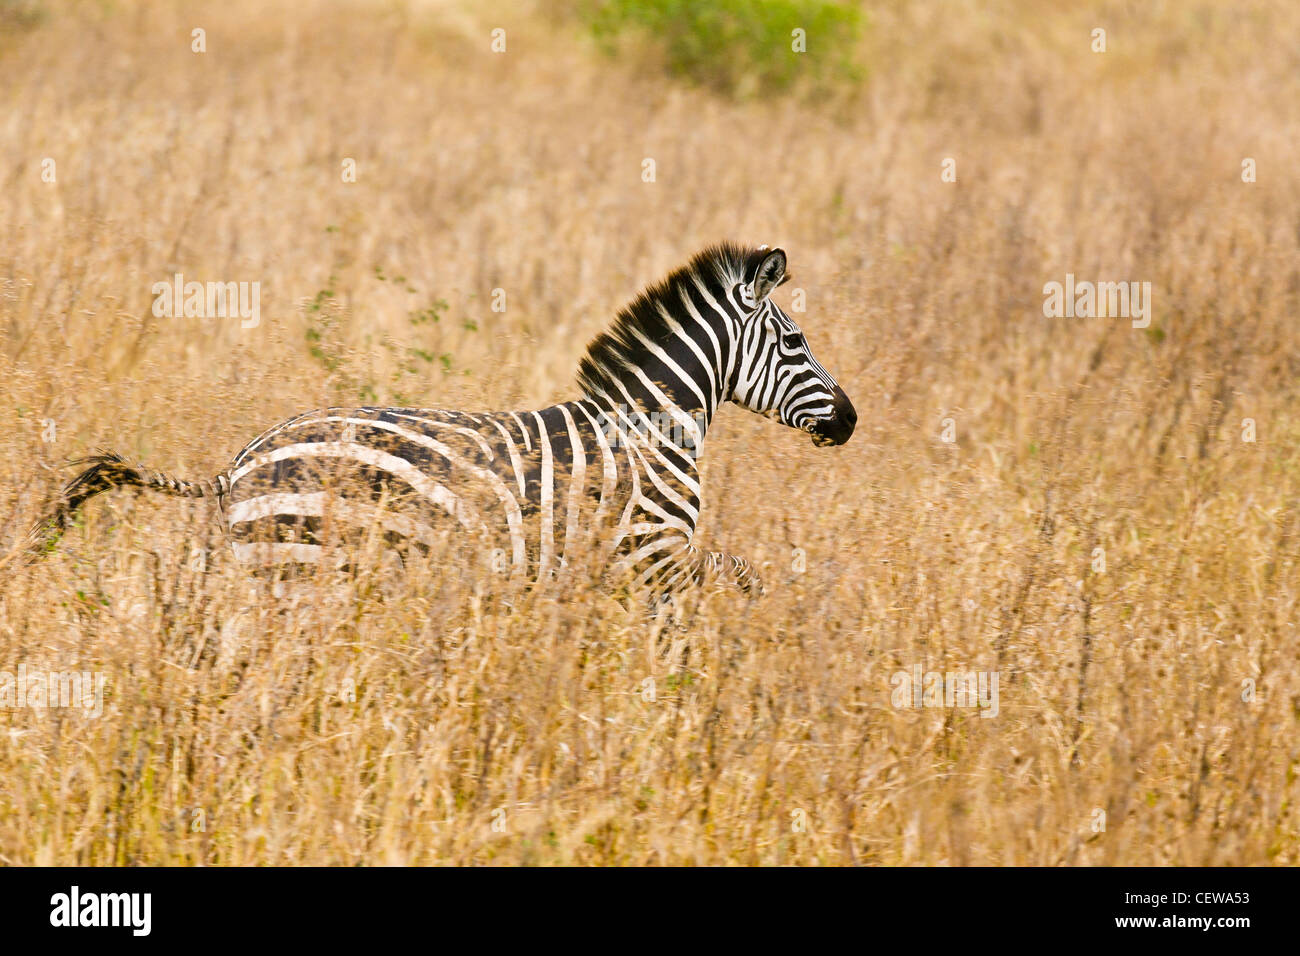 Zebra running through grass in Tanzania, Africa. Stock Photo